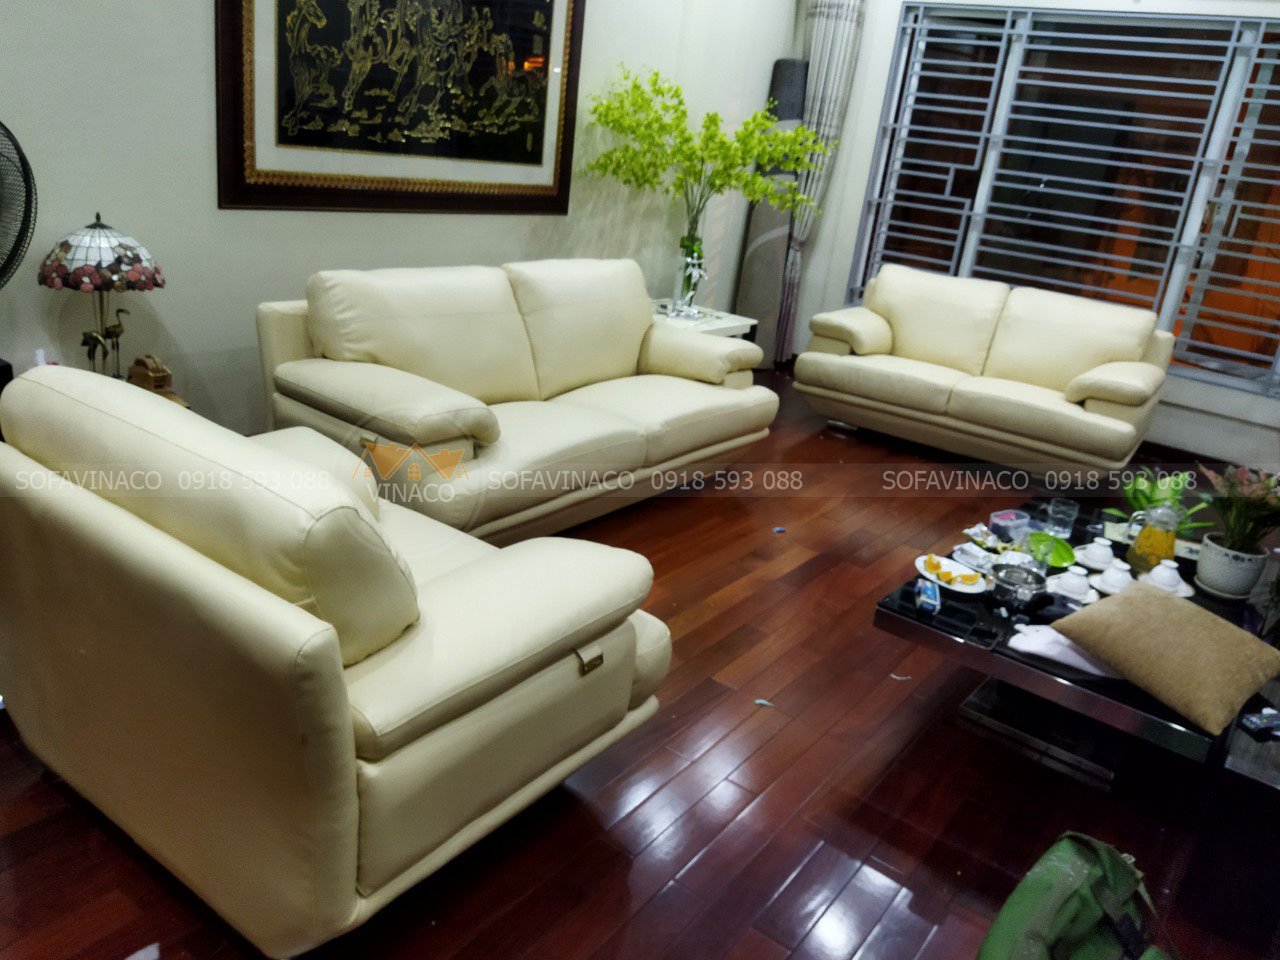 Bọc lại ghế sofa tốt nhất tại TP Hồ Chí Minh